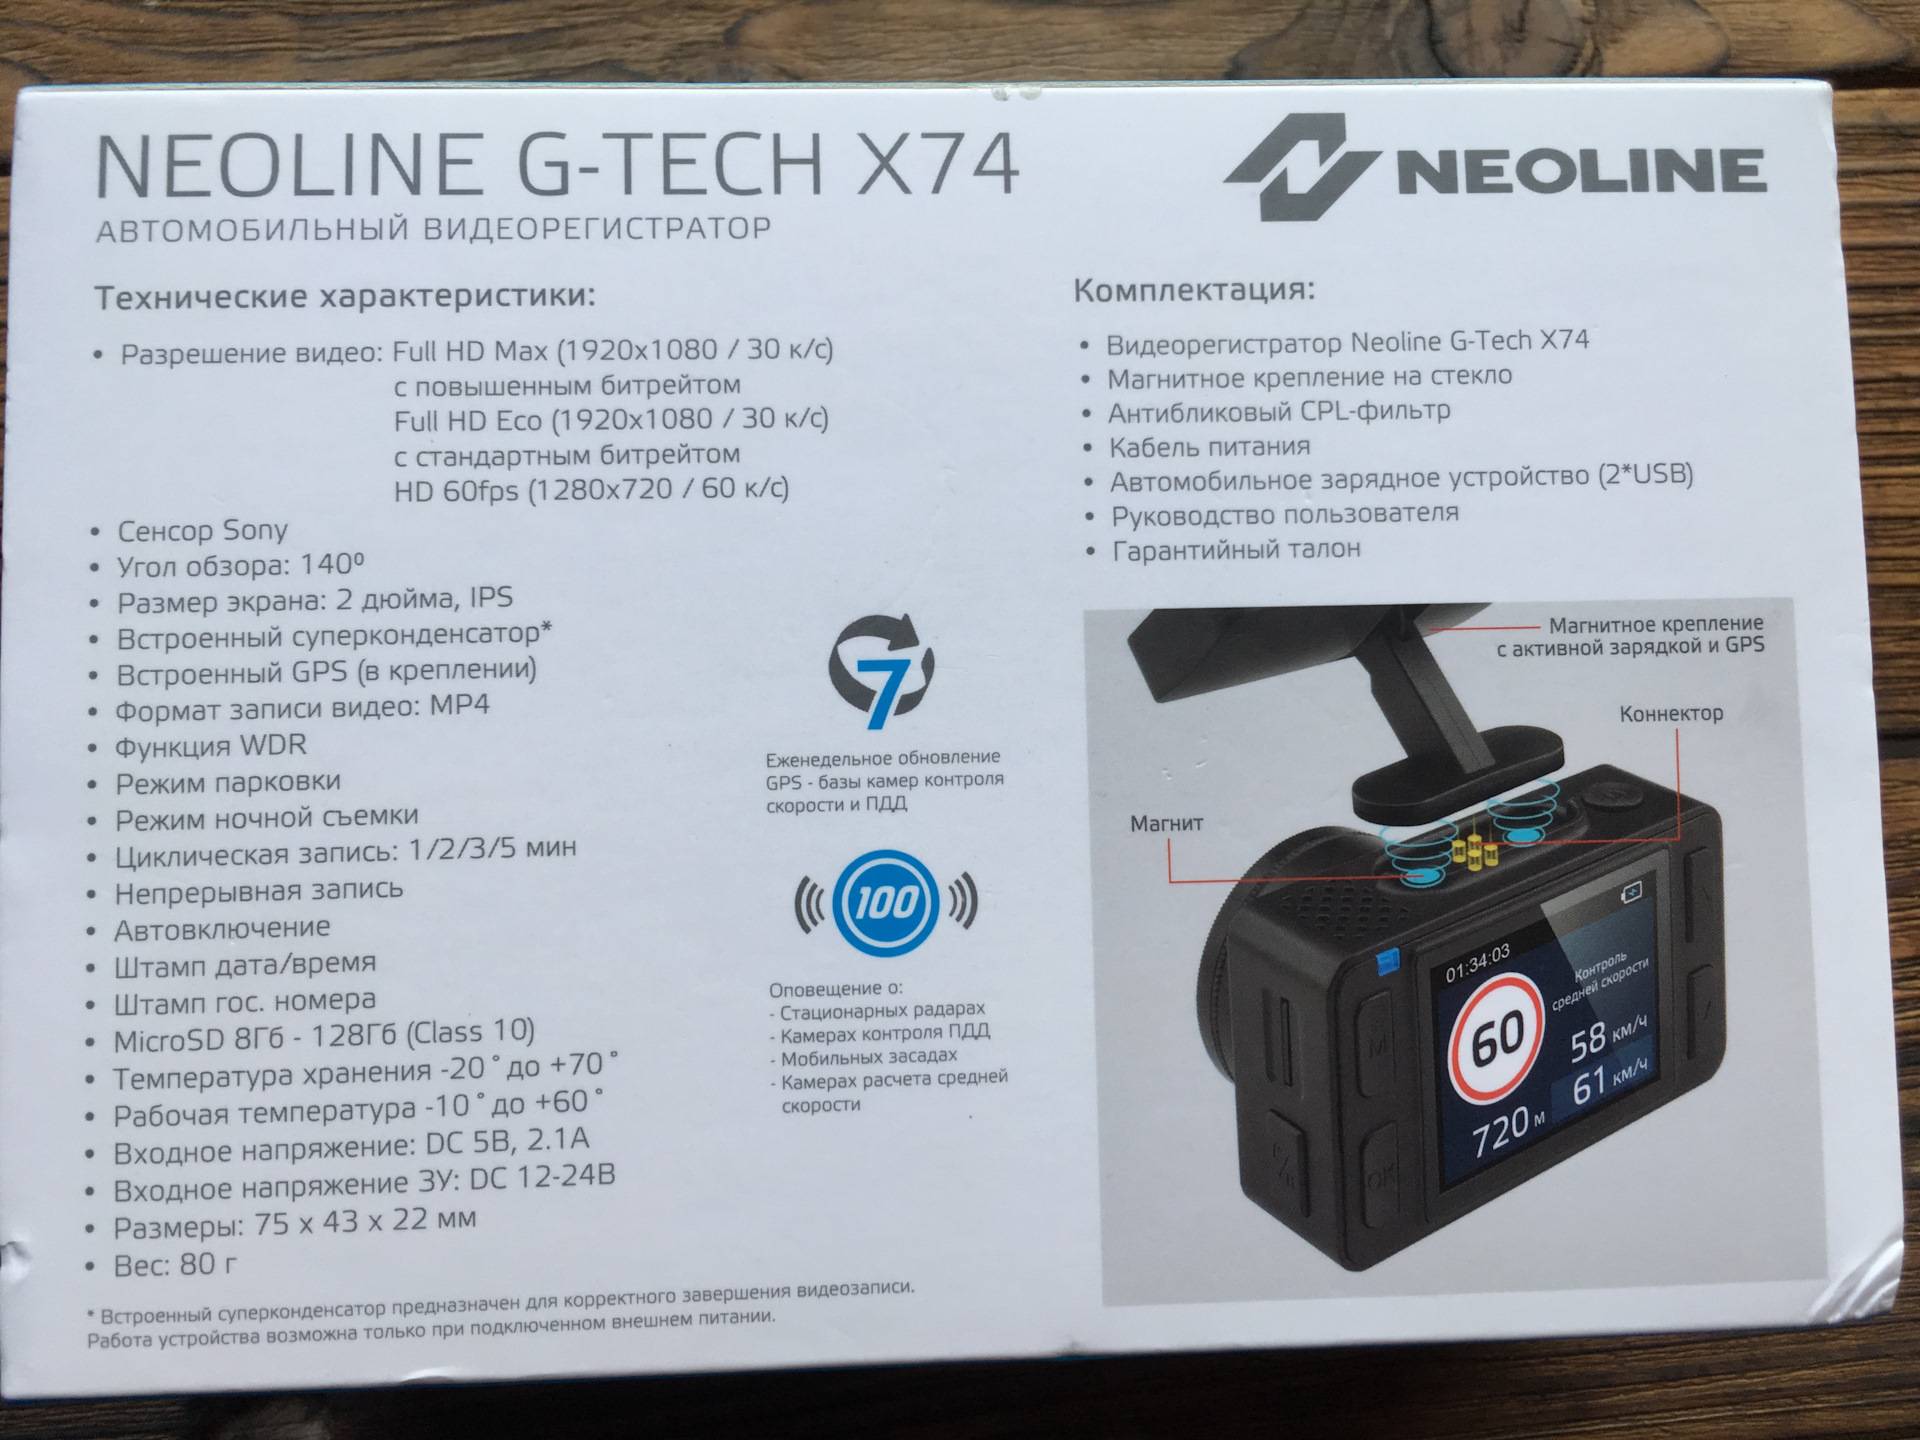 Обзор neoline g-tech x77 ai — умный видеорегистратор распознаёт дорожные знаки за тебя